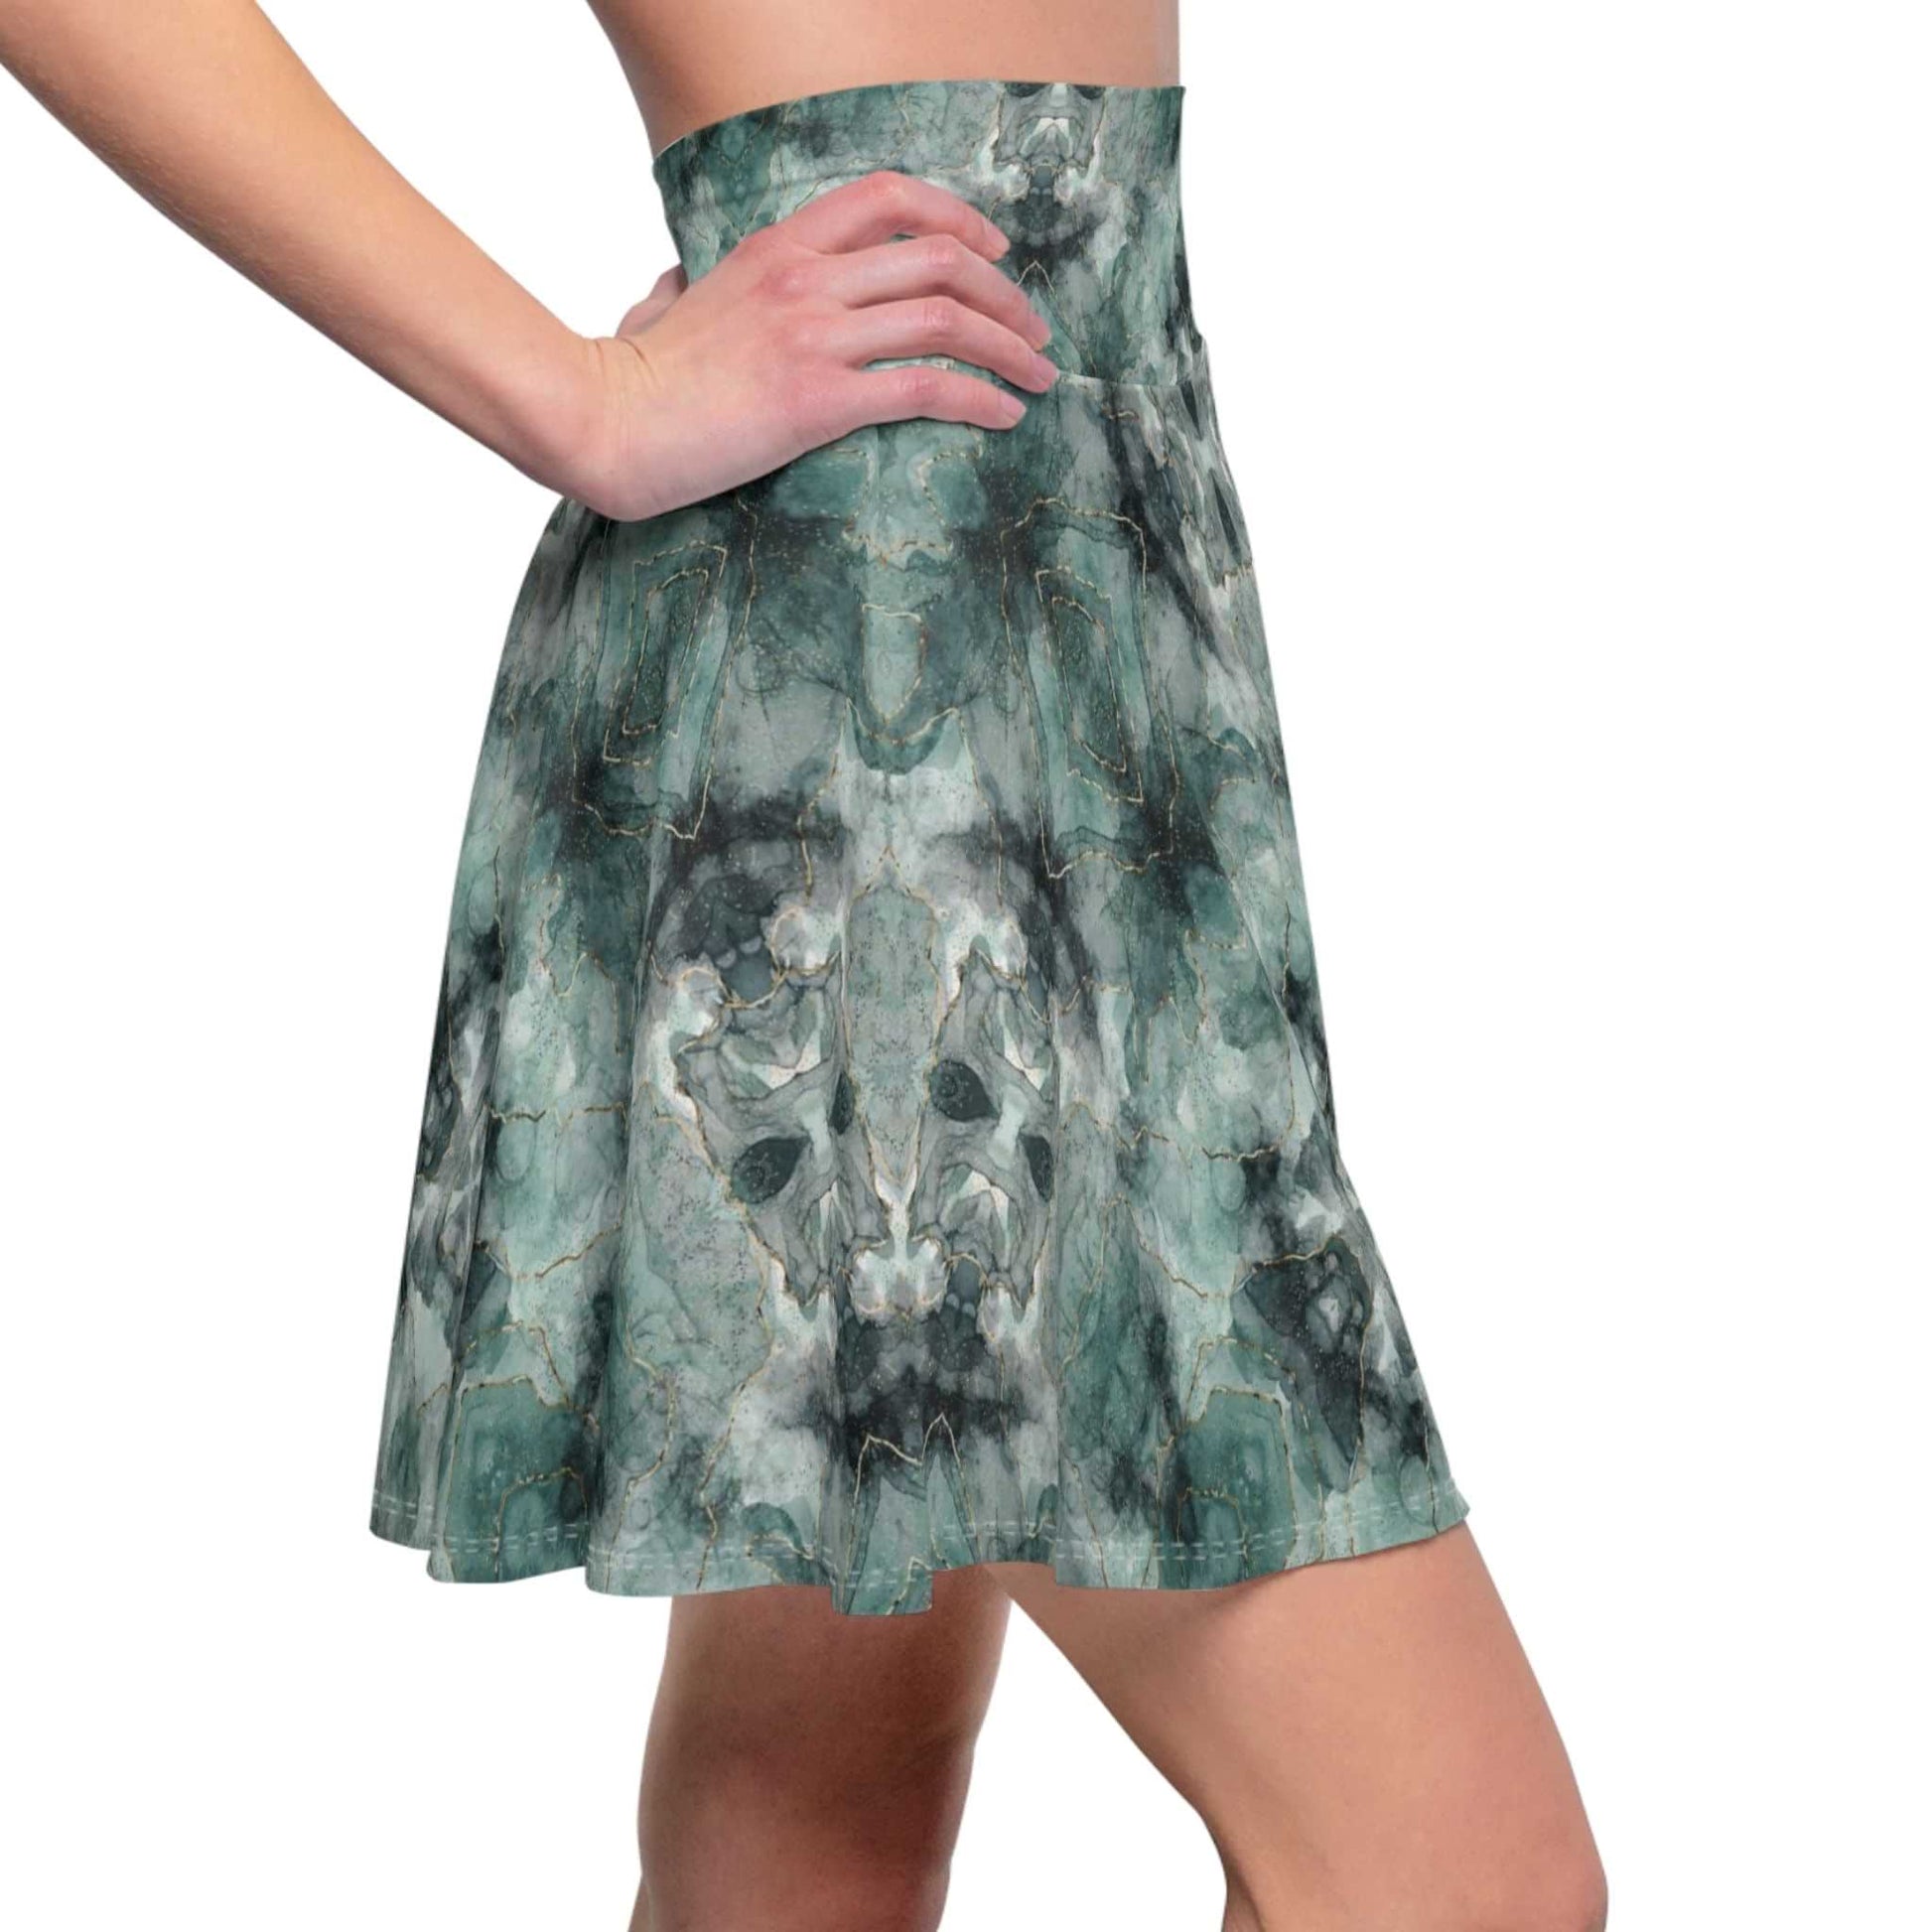 Green Chroma Women's Skater Skirt - ZumBuys